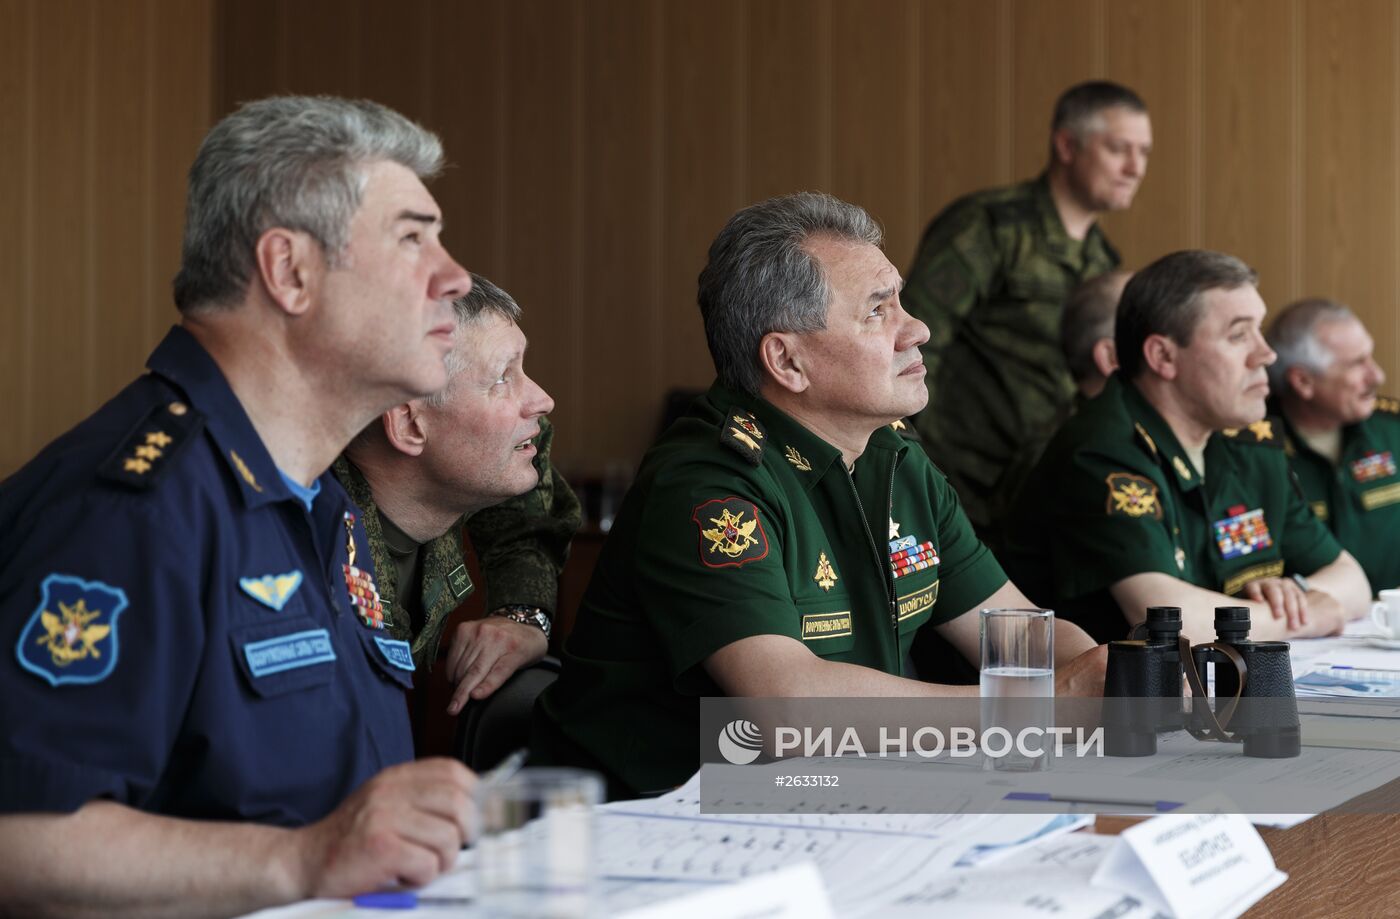 Министр обороны РФ С.Шойгу прибыл на учения на полигоне "Ашулук" в Астраханской области